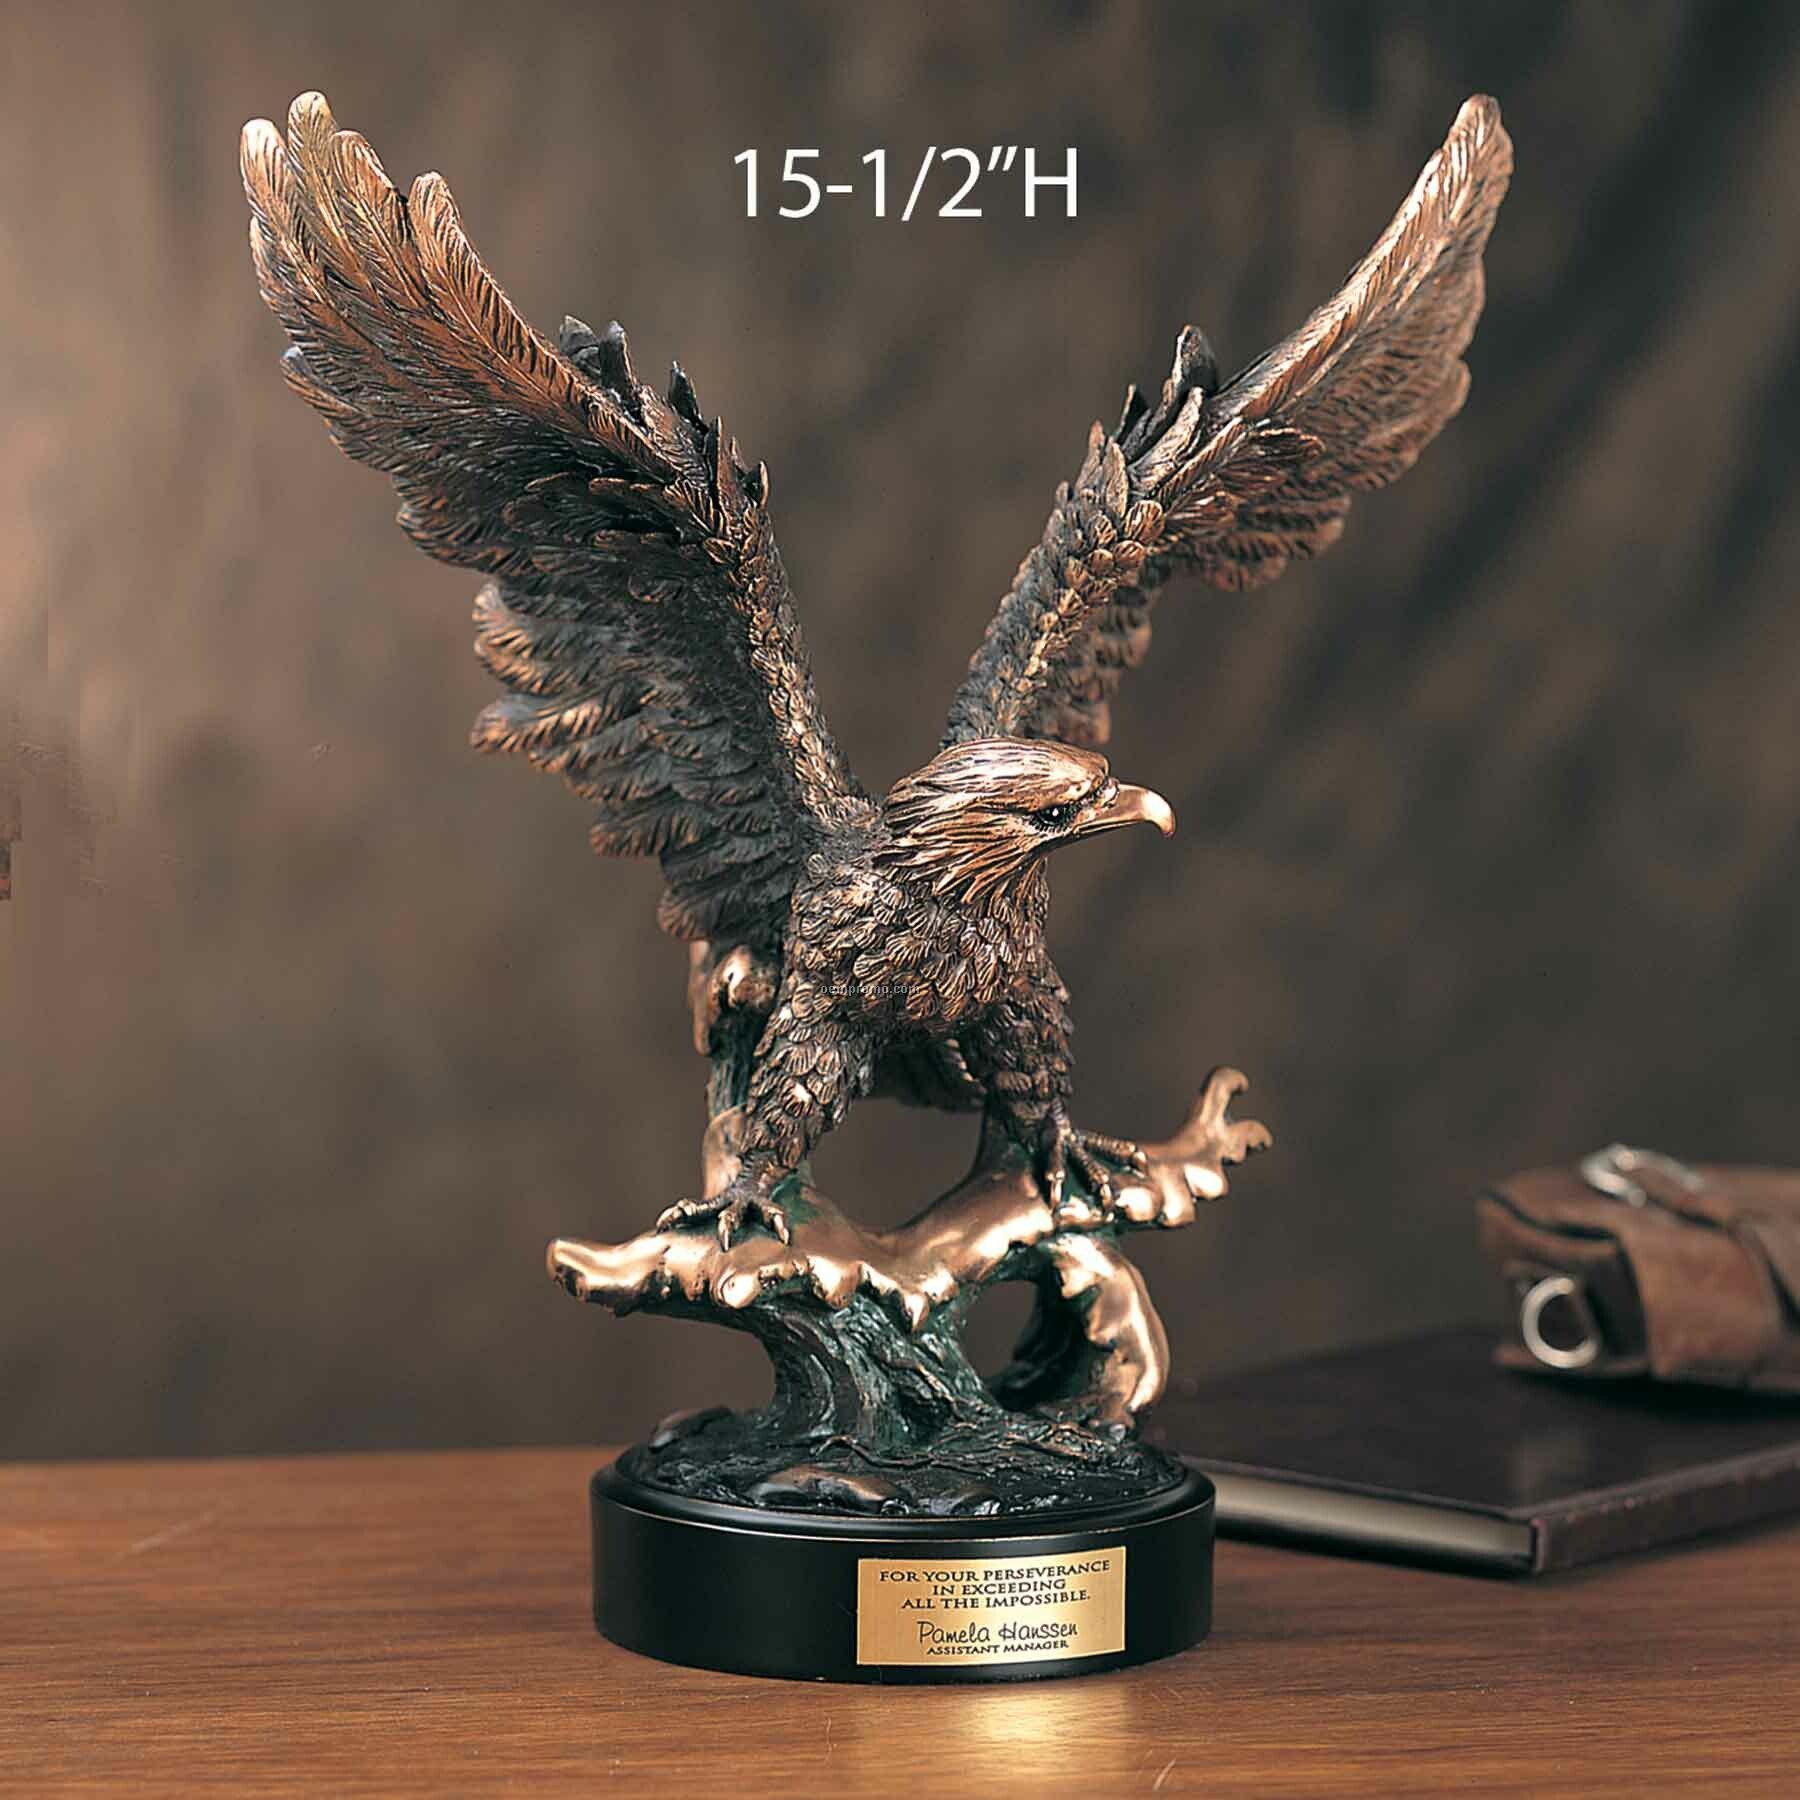 15-1/2" Perseverance Eagle Award